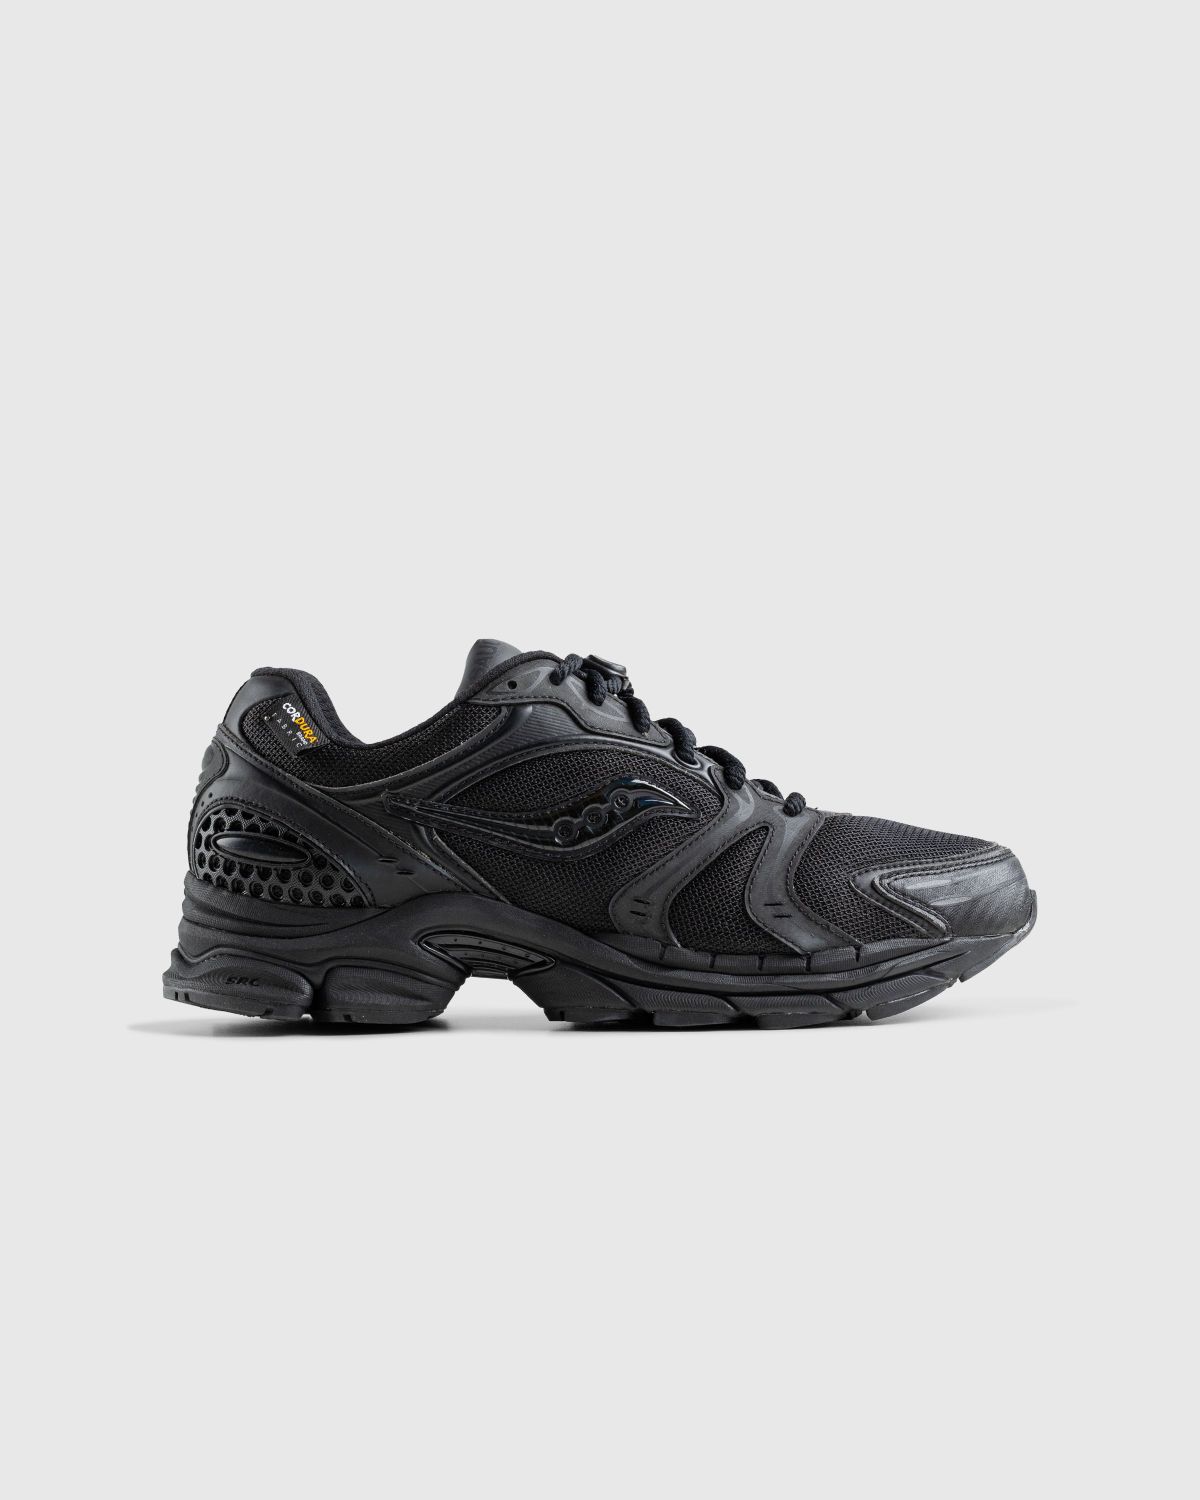 Saucony – ProGrid Triumph 4 Black - Sneakers - Black - Image 1